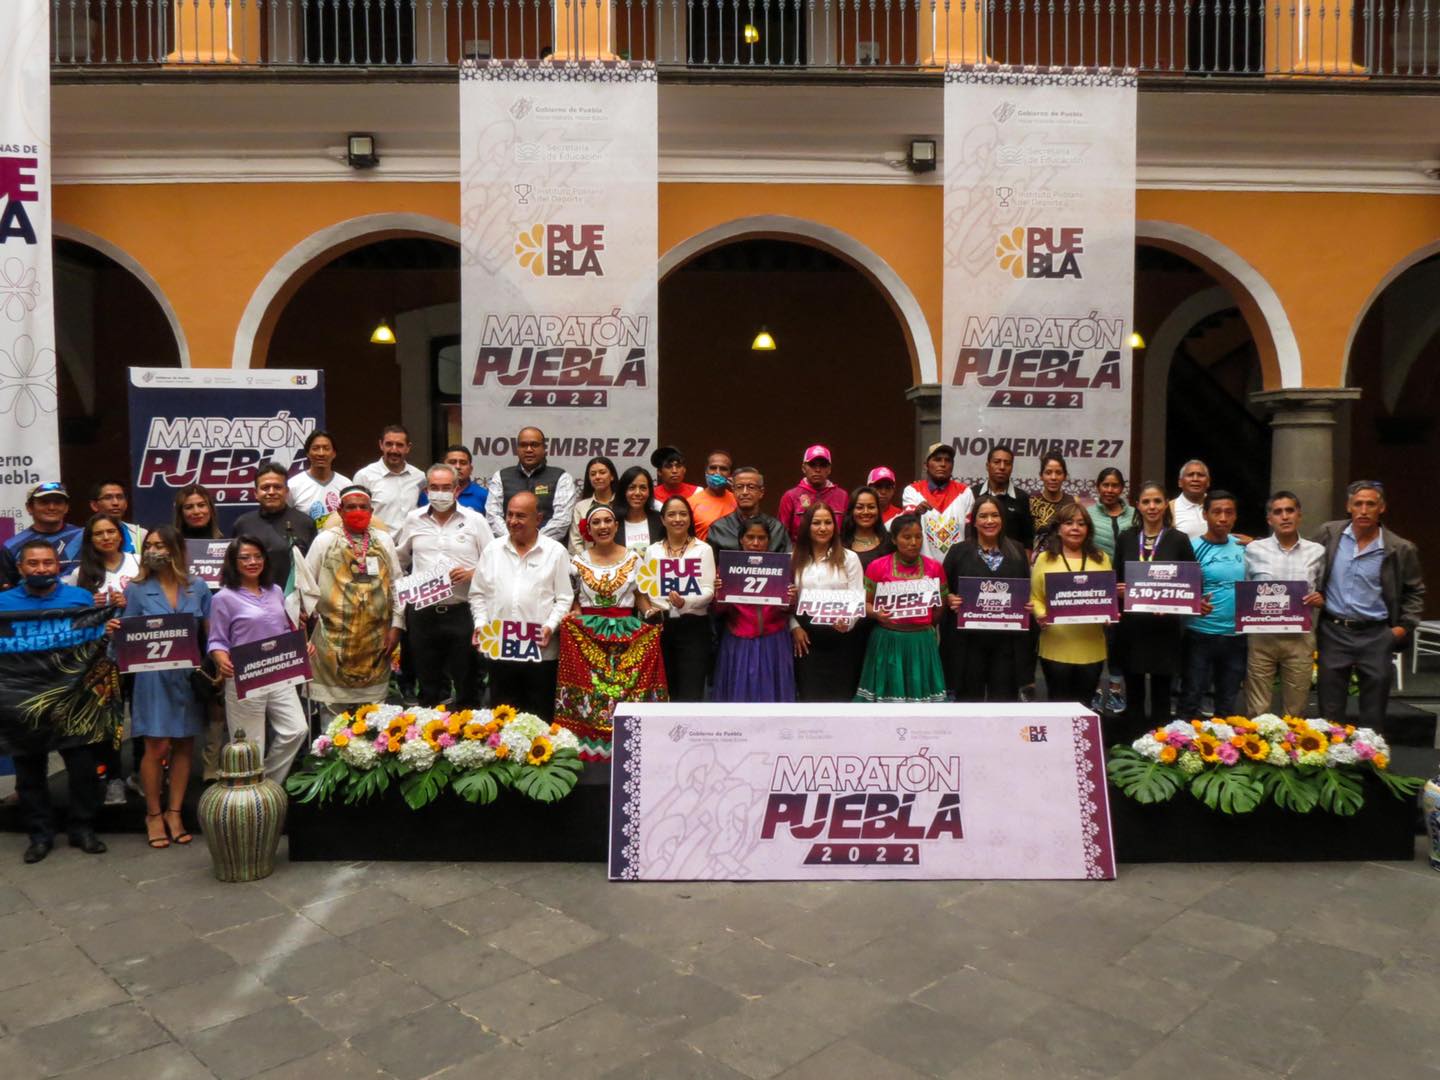 El 27 de noviembre será el Maratón de Puebla 2022